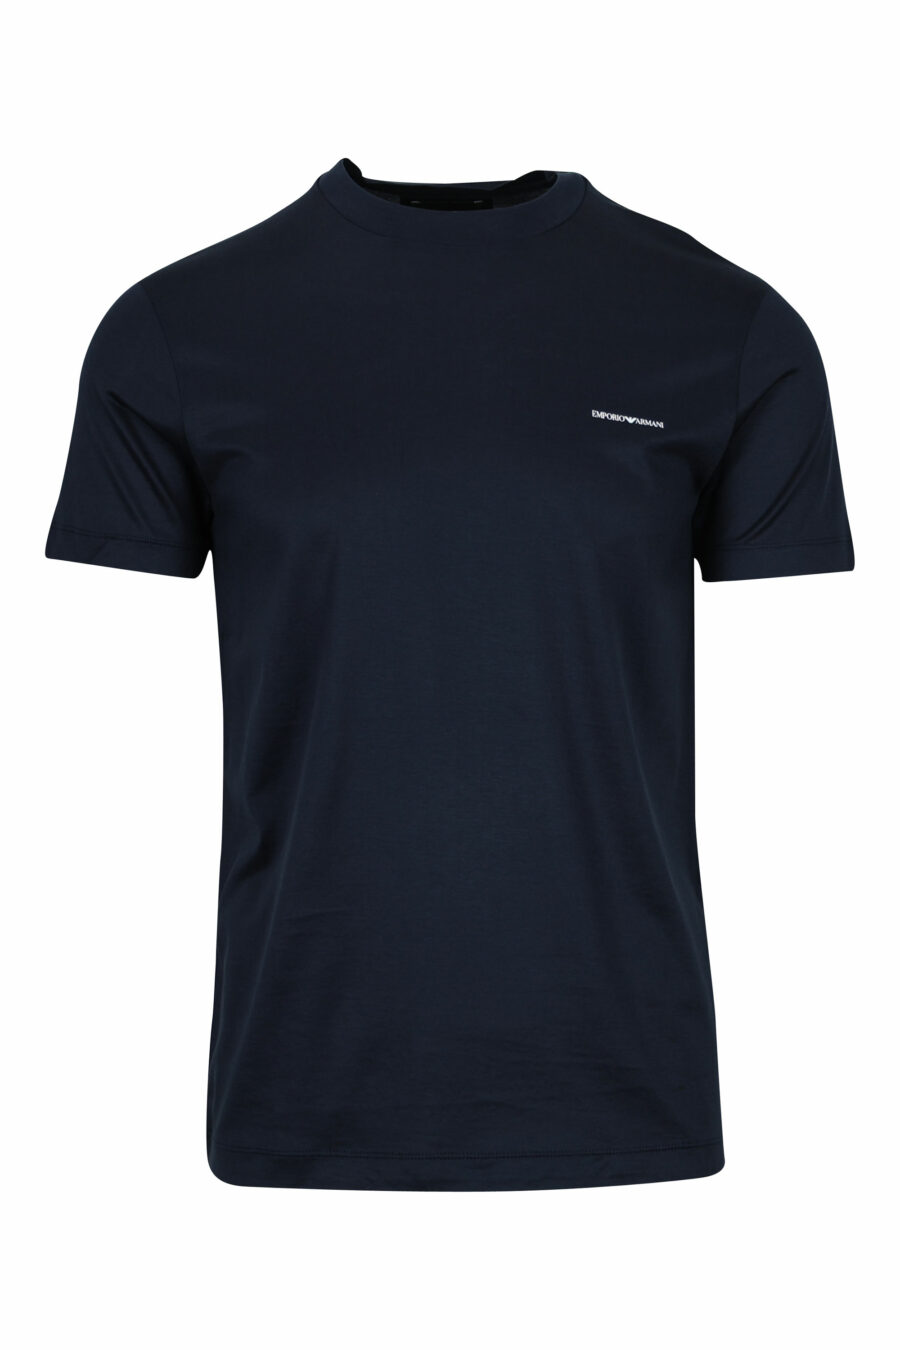 T-shirt azul escura com minilogo "emporio" - 8059516408352 1